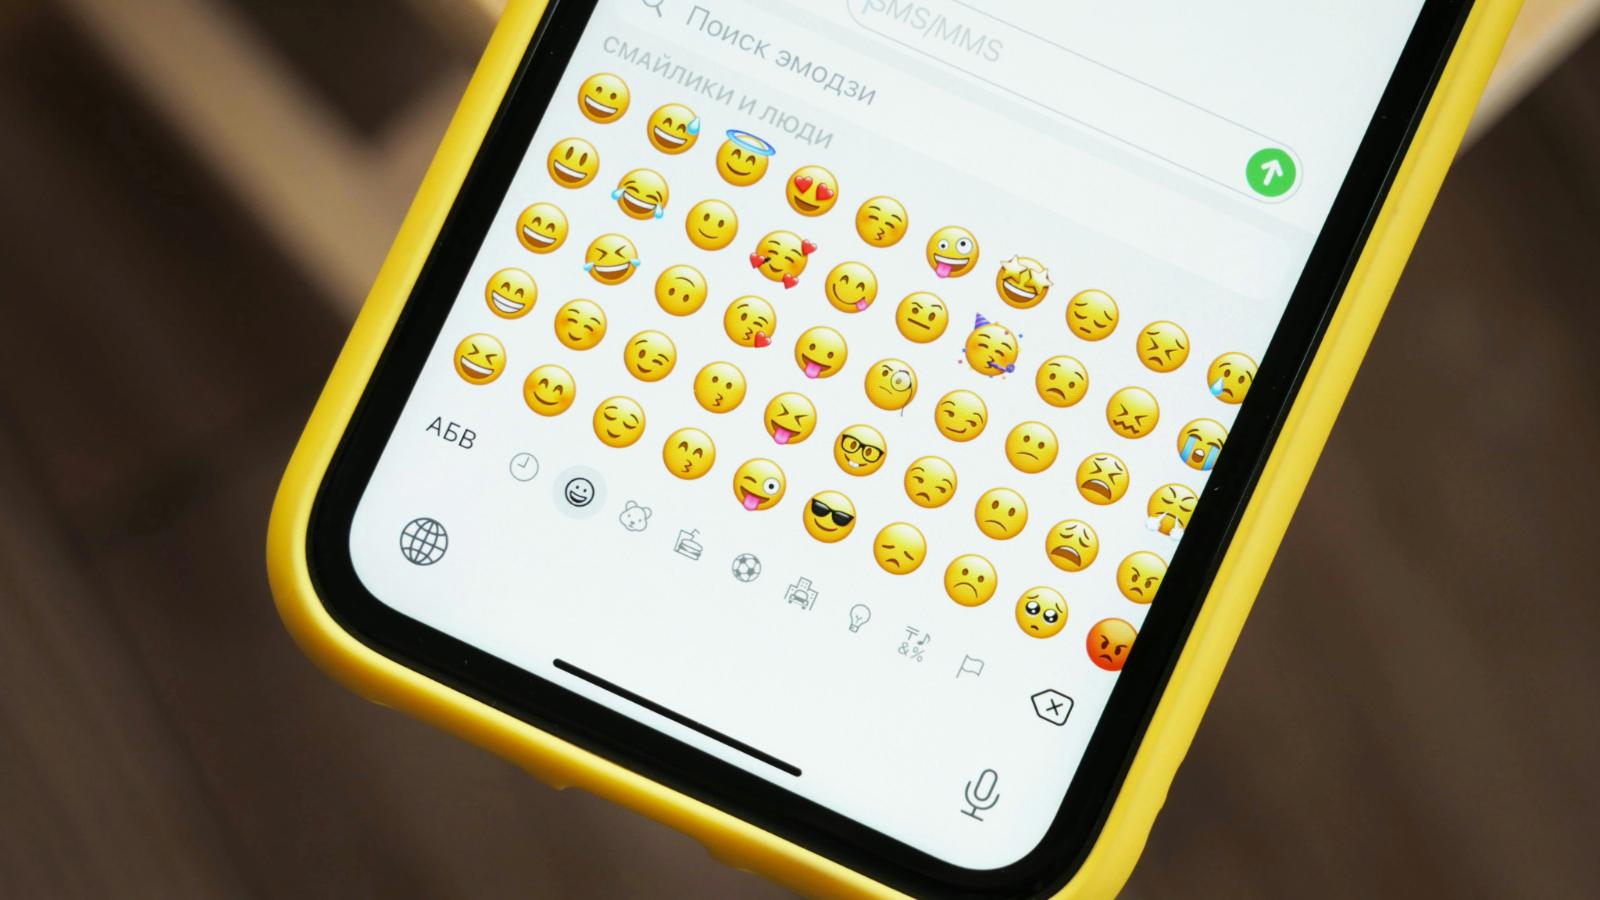 iPhone emojis in the keyboard